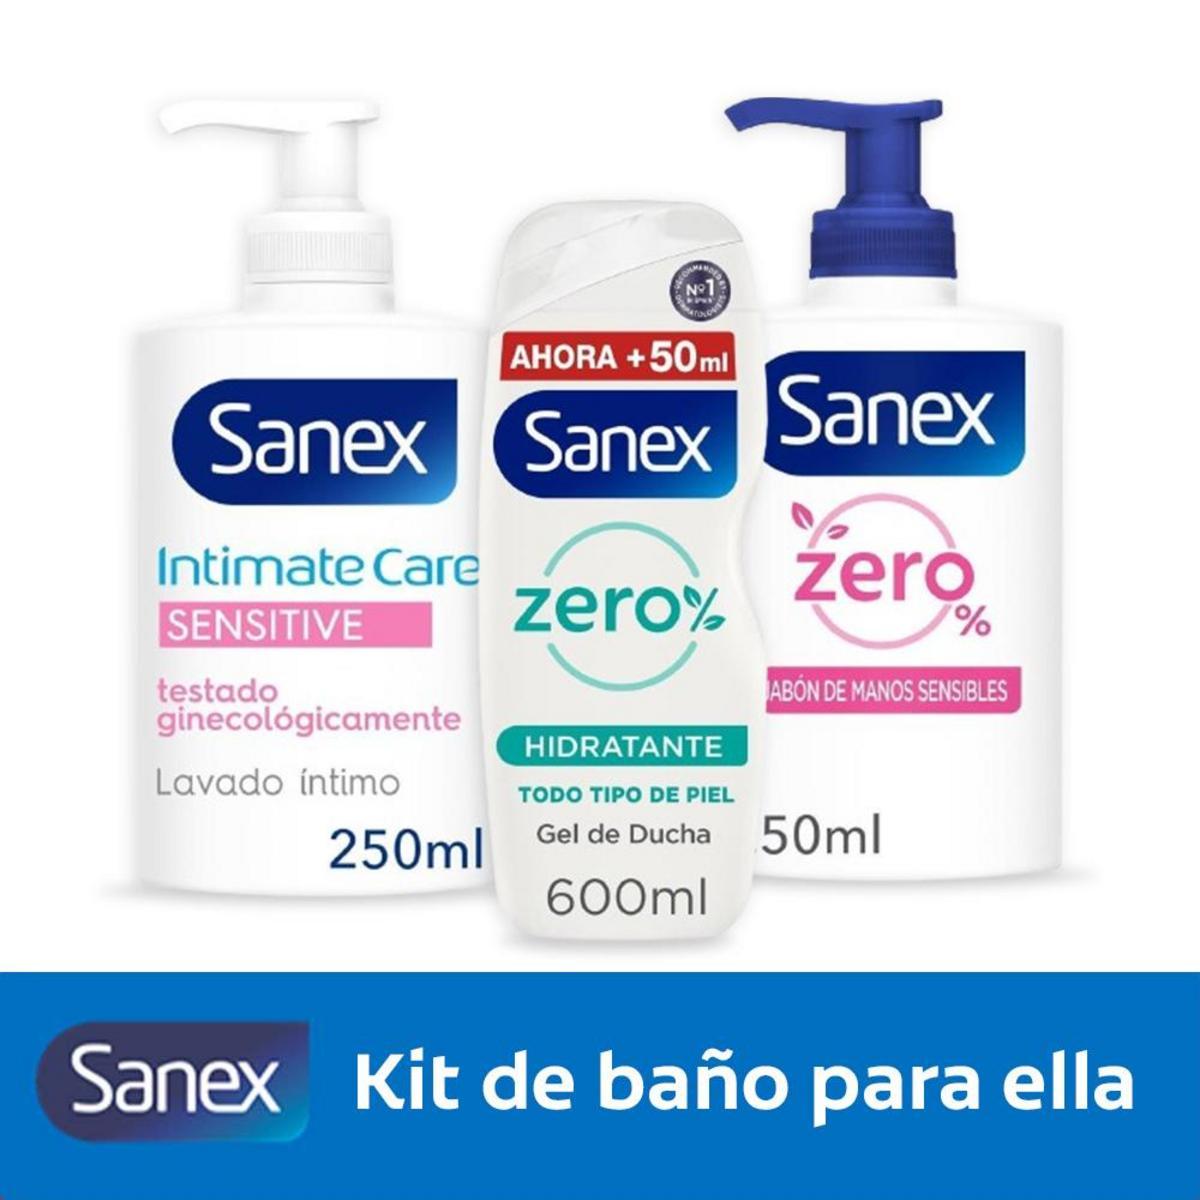 Kit de baño Sanex por sólo 3,50€ ¡¡64% de descuento!!